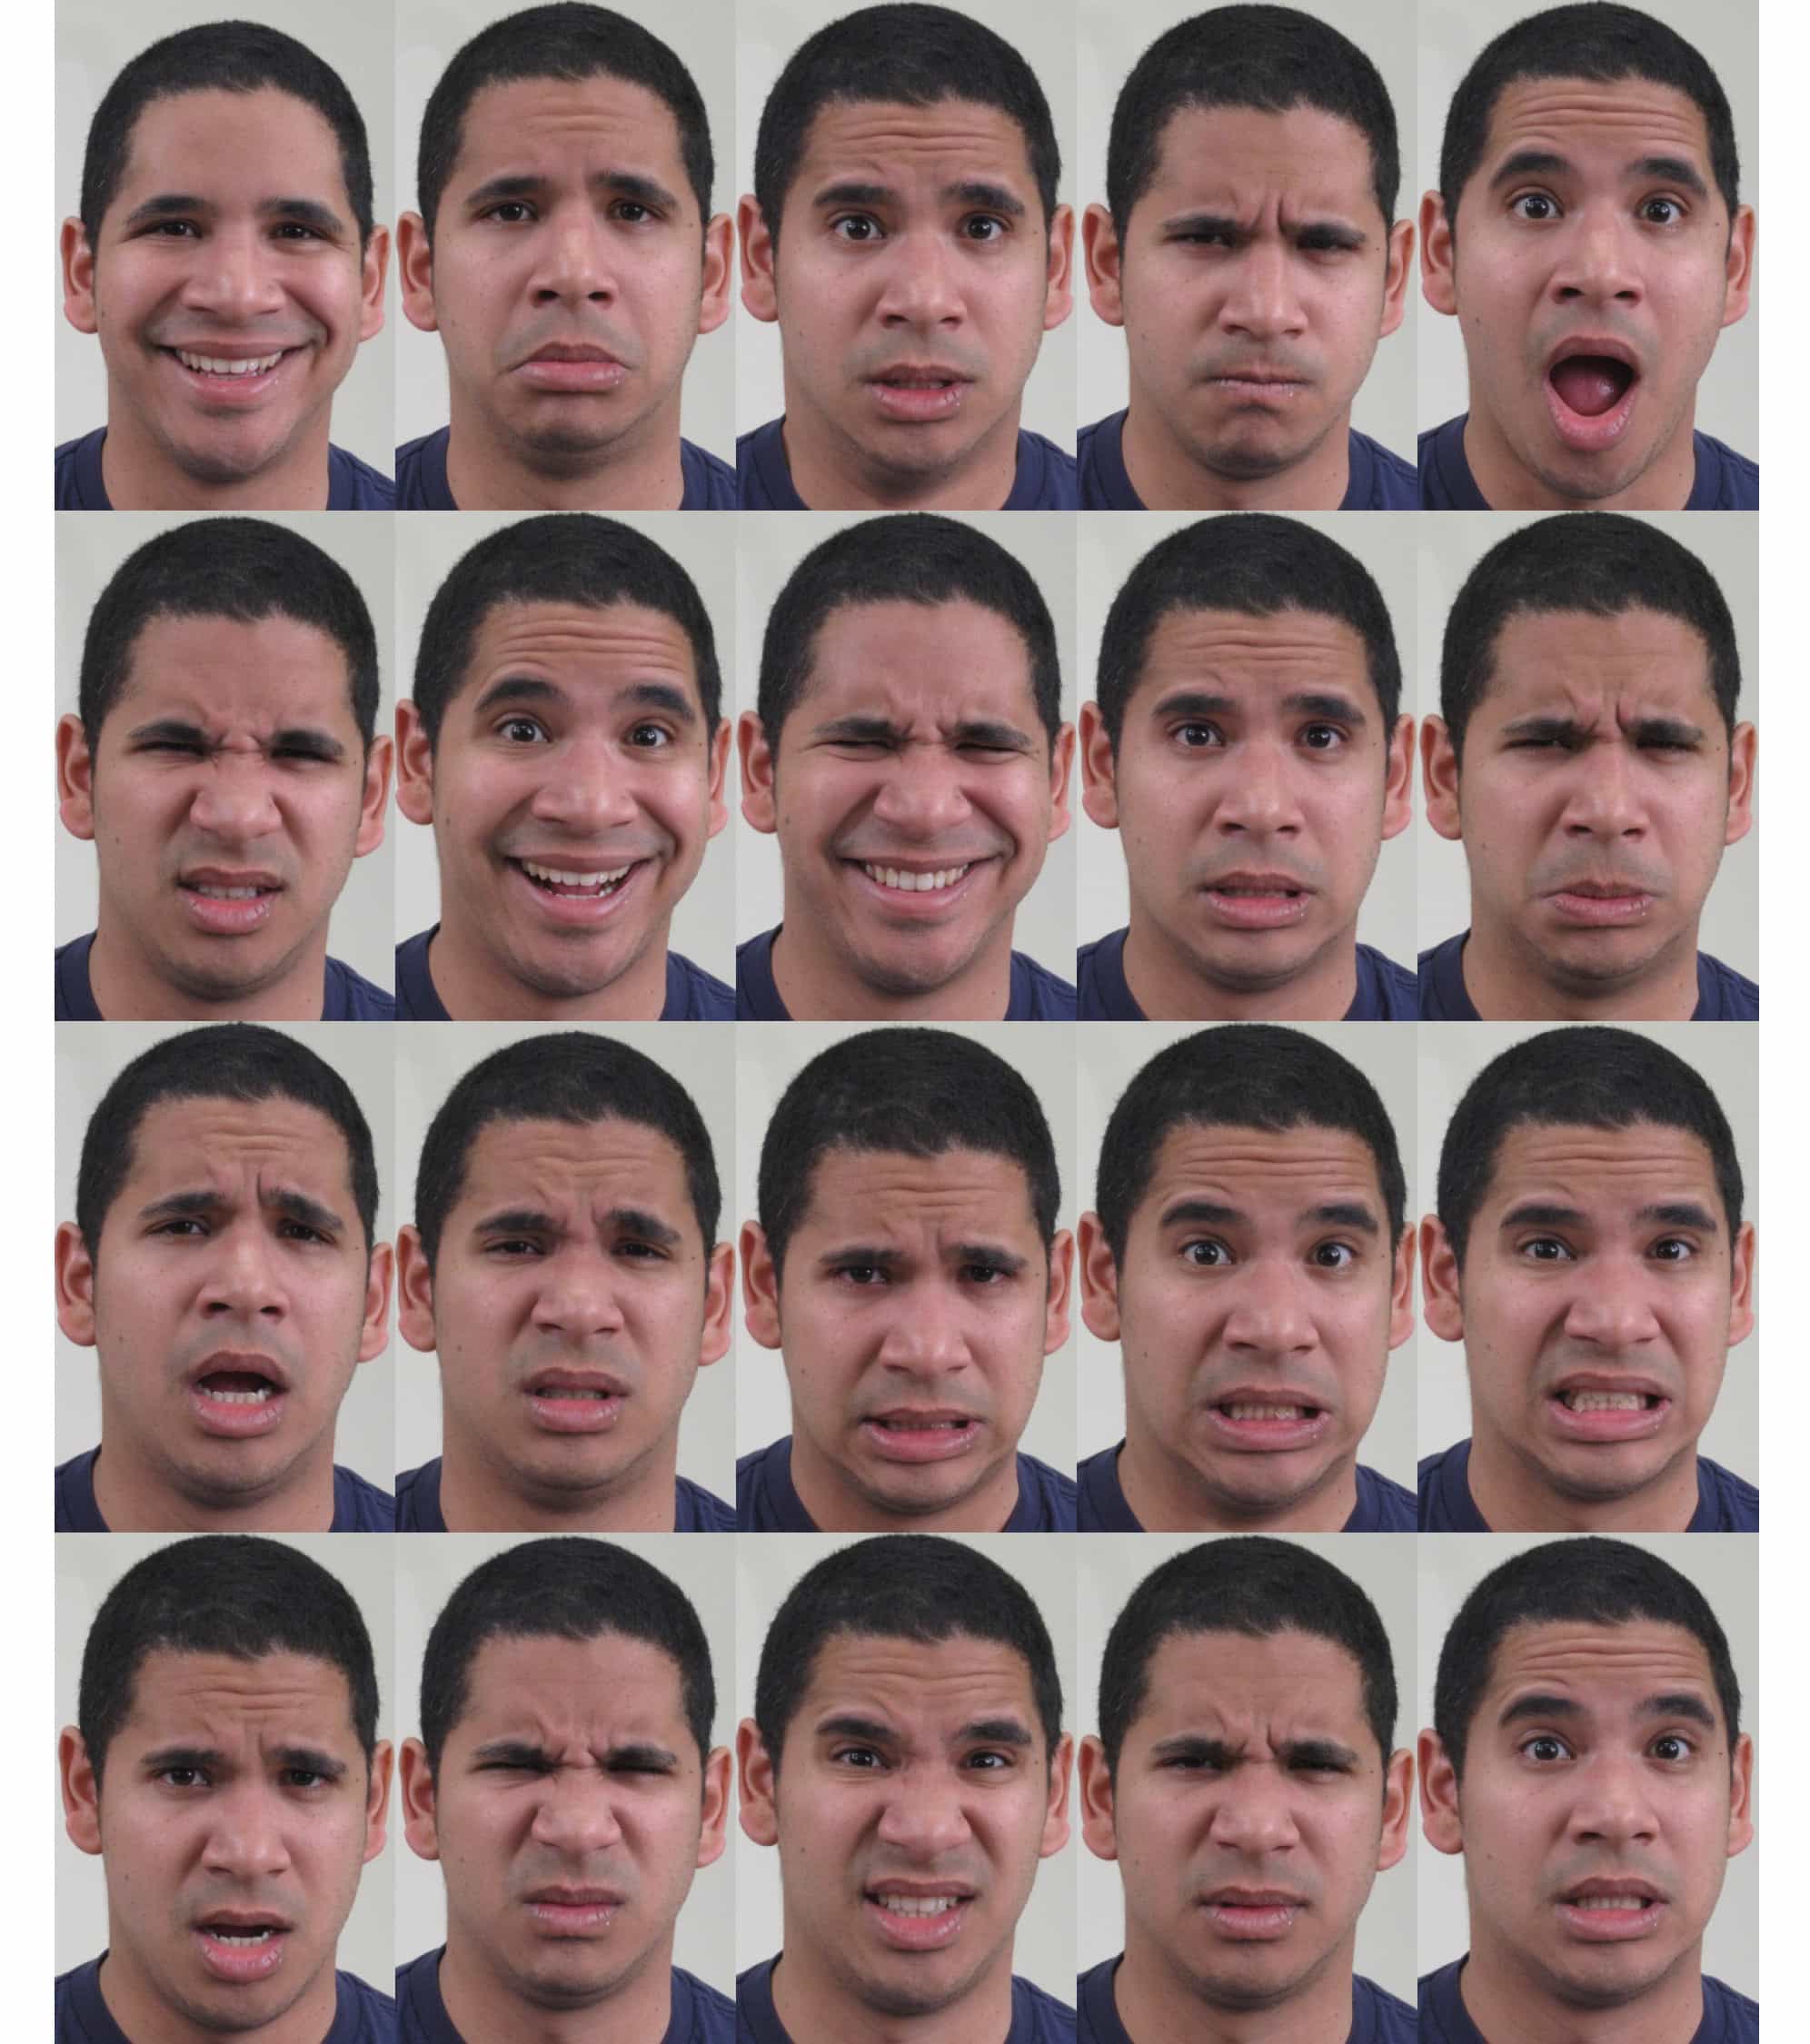 Учёные выявили 21 эмоциональное выражение лица